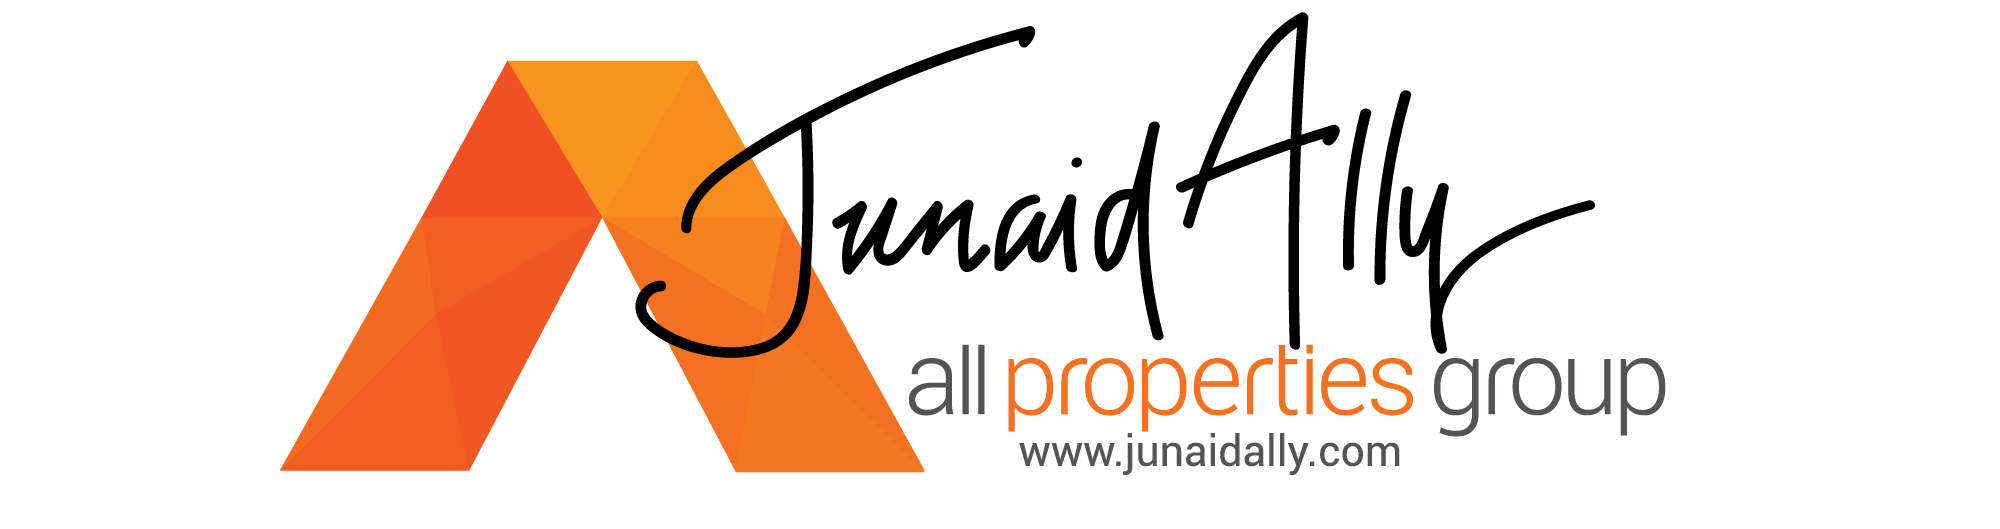 Junaid Ally Properties